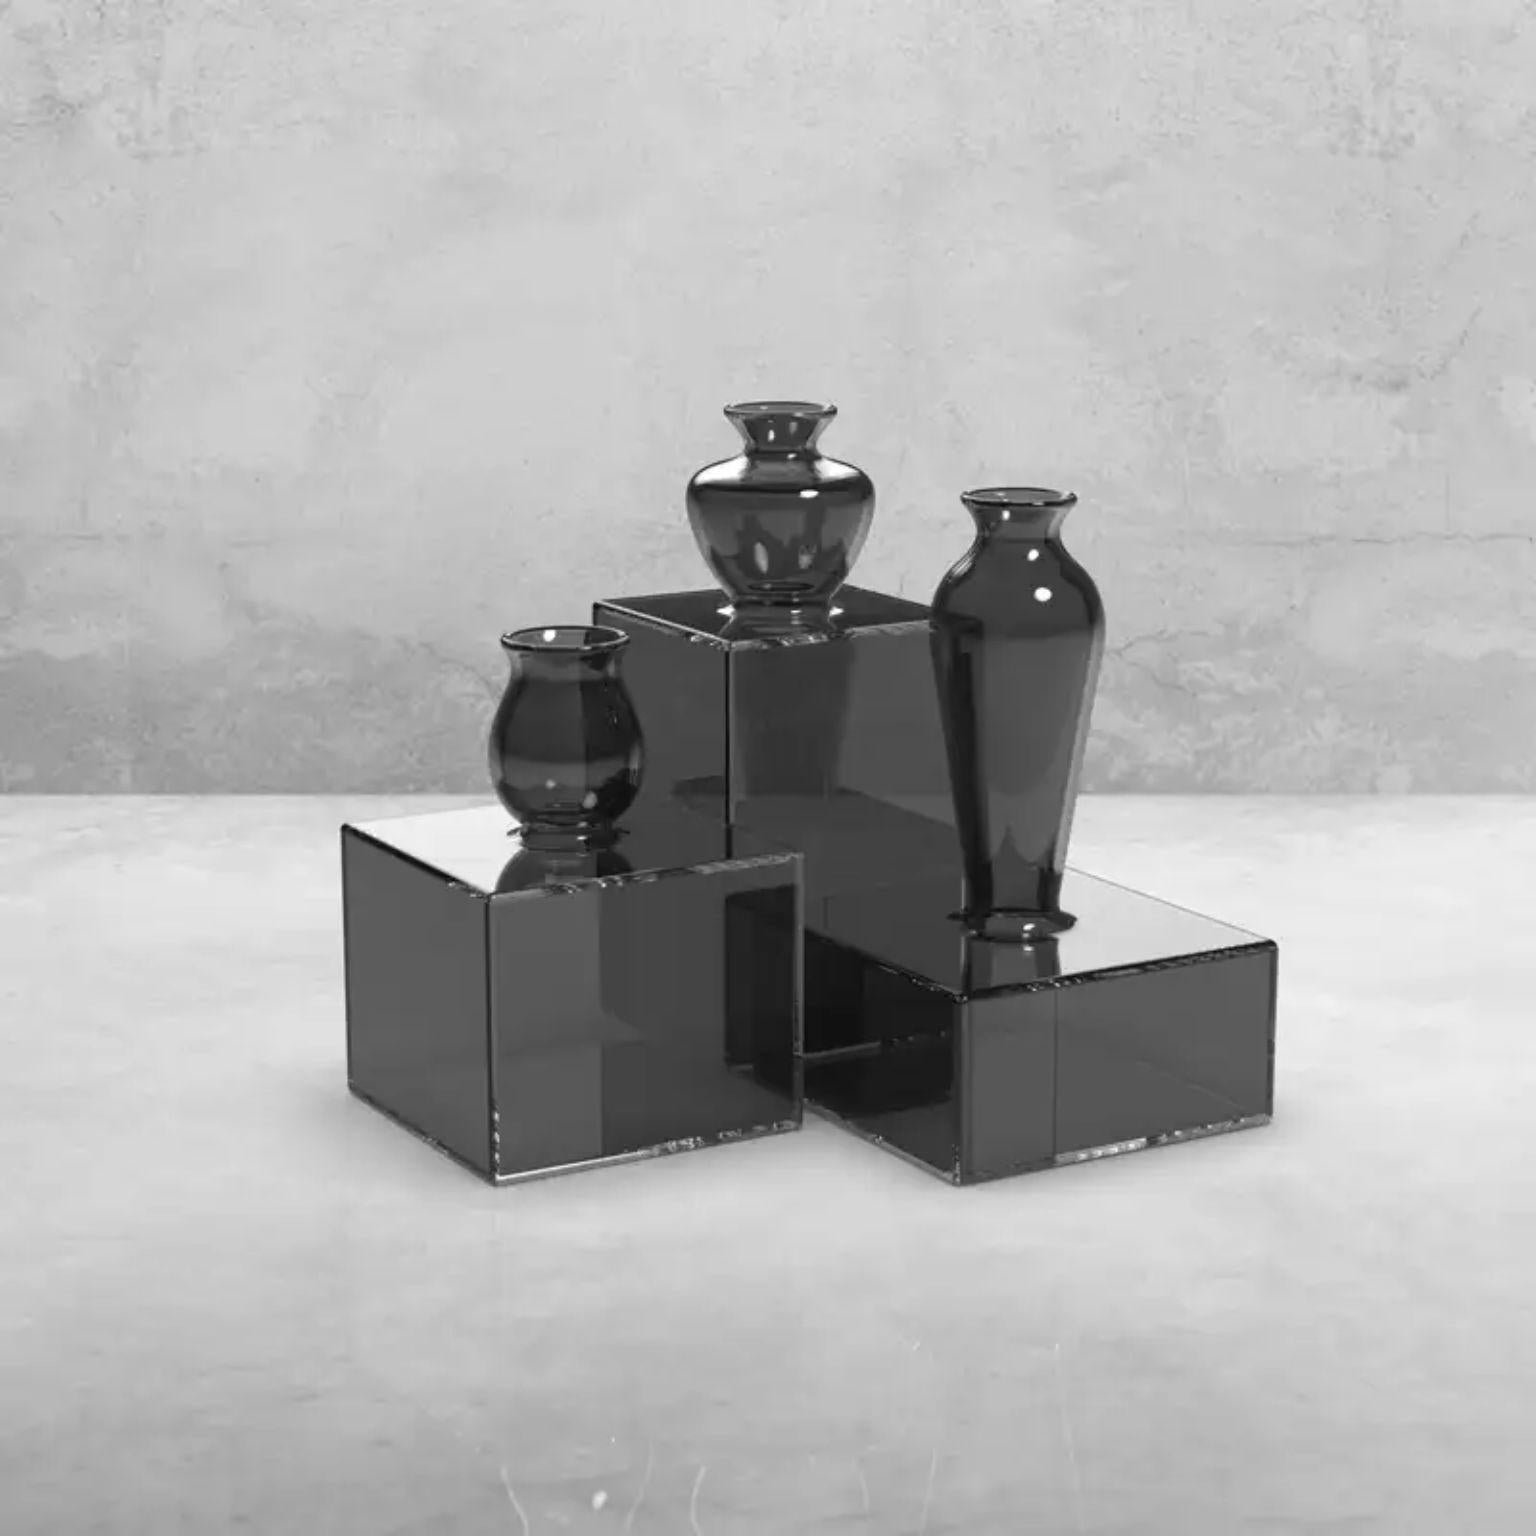 Satz von 3 quadratischen schwarzen Milo-Vasen von Mason Editions
Entworfen von Quaglio Simonelli.
Abmessungen: Mittlere Vase: T 6,4 x B 6,4 x H 8,8 cm.
Hohe Vase: T 5,6 x B 5,6 x H 12,5 cm.
Niedrige Vase: T 7,1 x B 7,1 x H 11,5 cm.
MATERIAL: